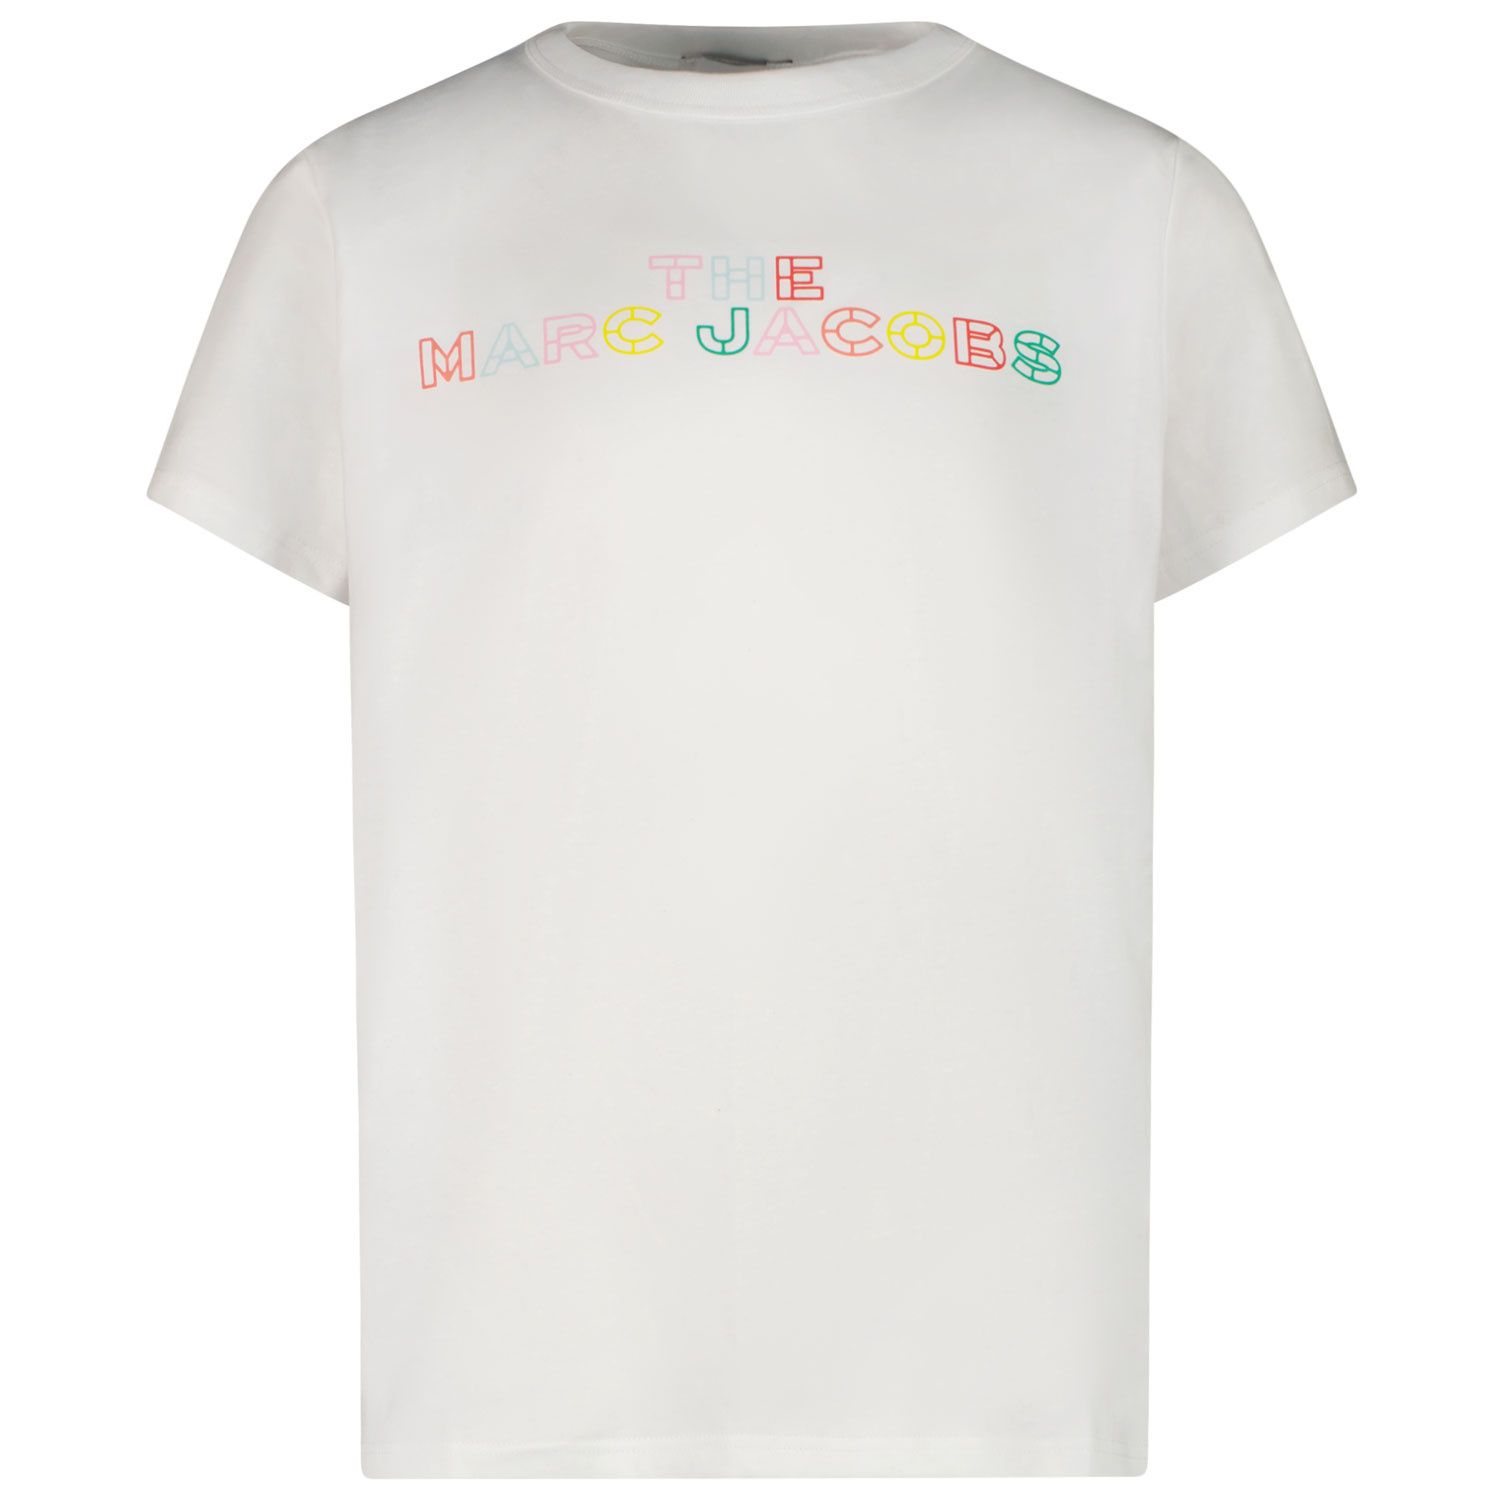 Afbeelding van Marc Jacobs W15602 kinder t-shirt wit